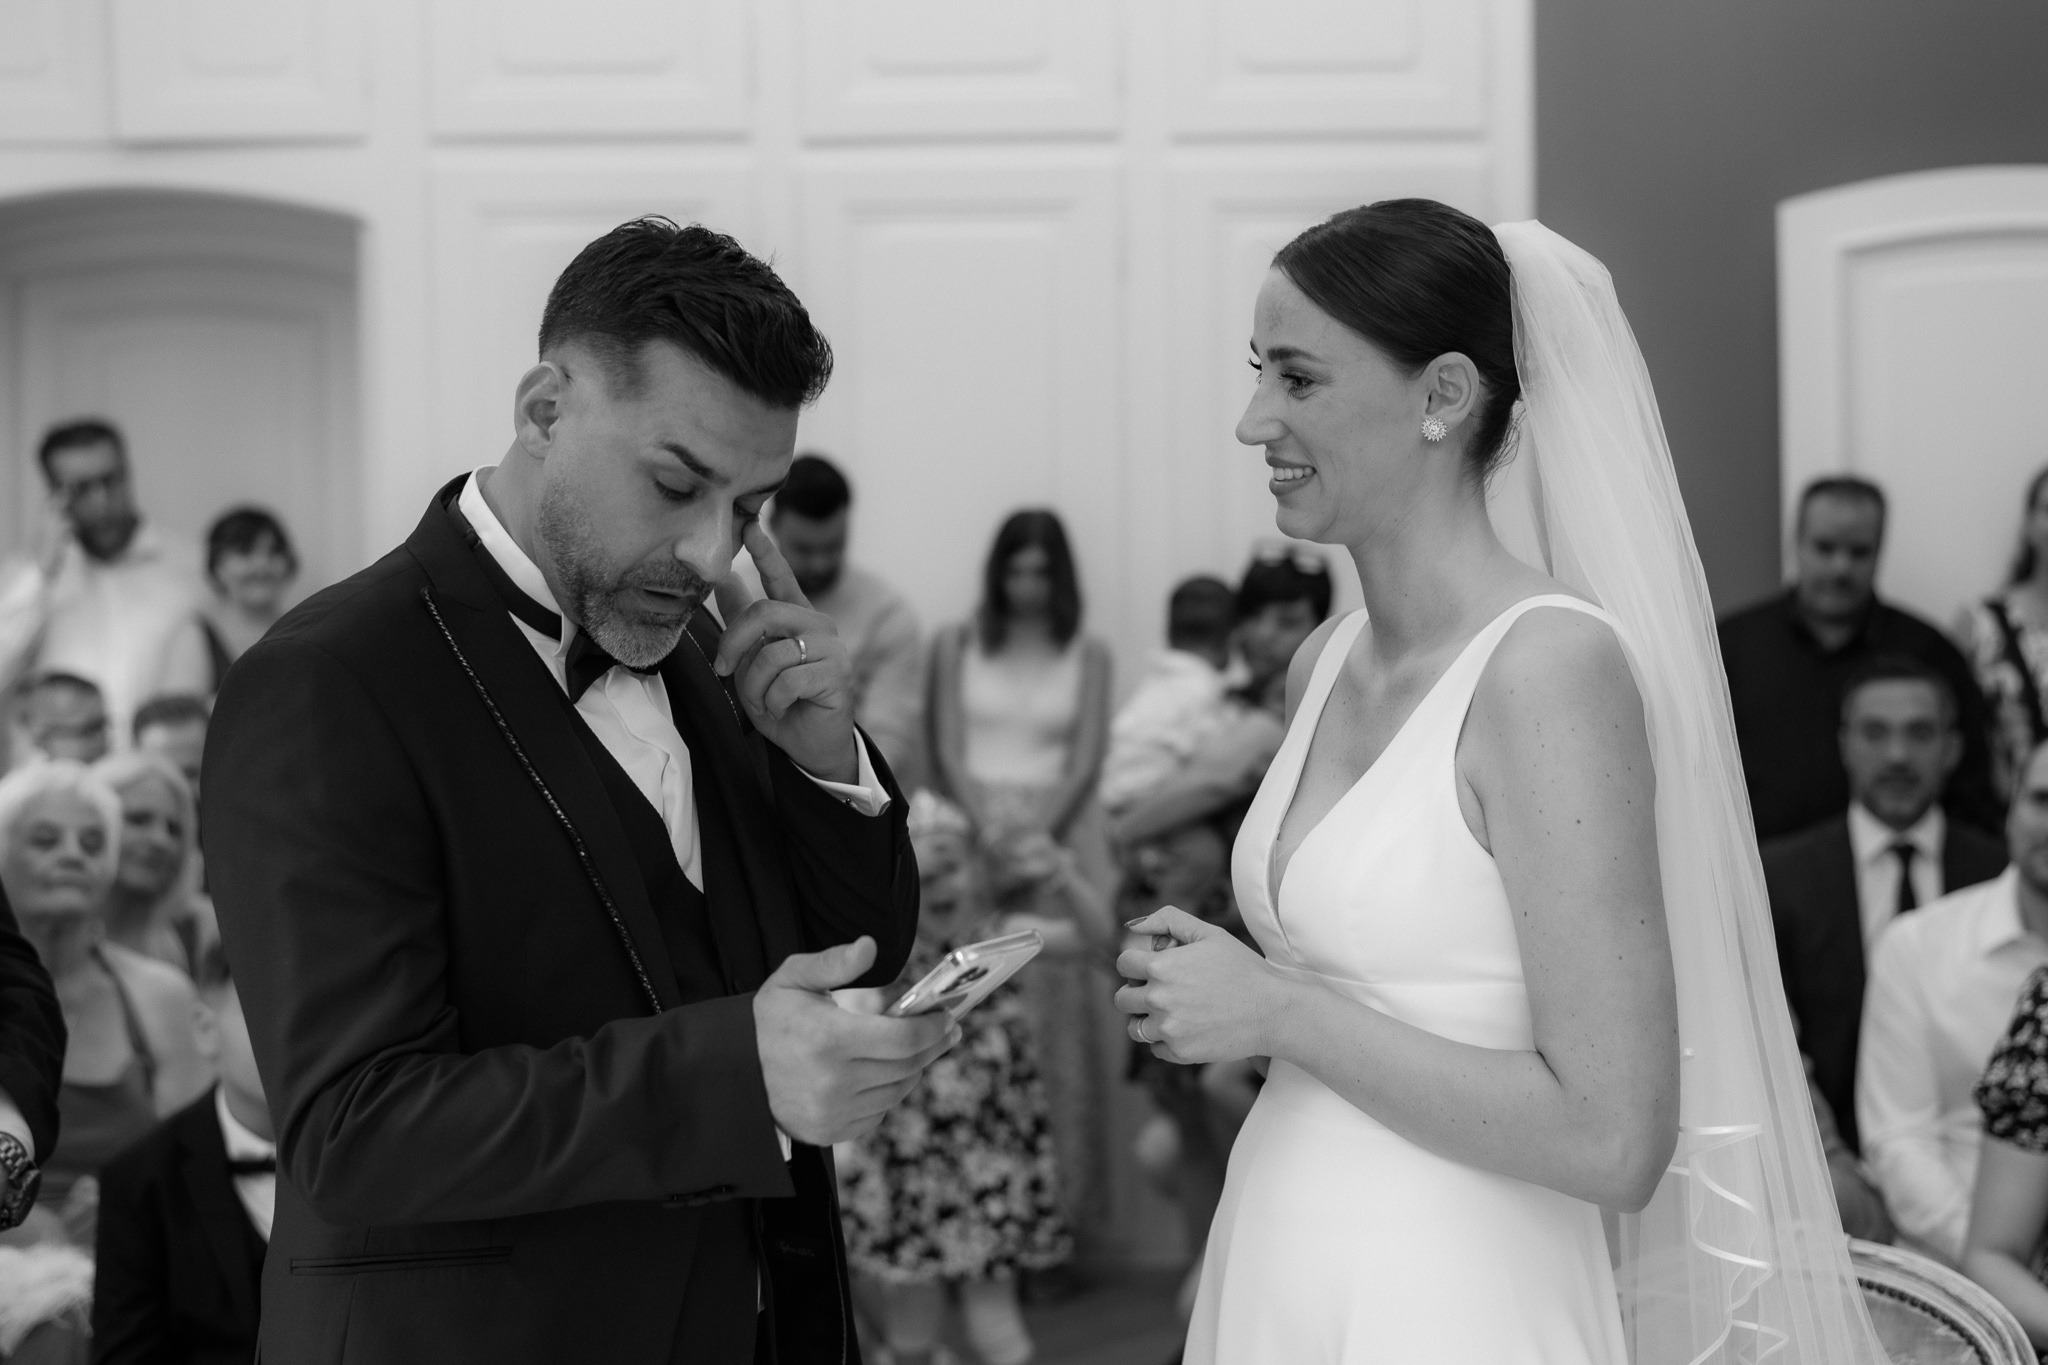 Entdecken Sie unsere einzigartigen Hochzeitsbilder, die Liebe und Emotionen perfekt einfangen. Professionell fotografierte Hochzeitsbilder für unvergessliche Erinnerungen an Ihren besonderen Tag